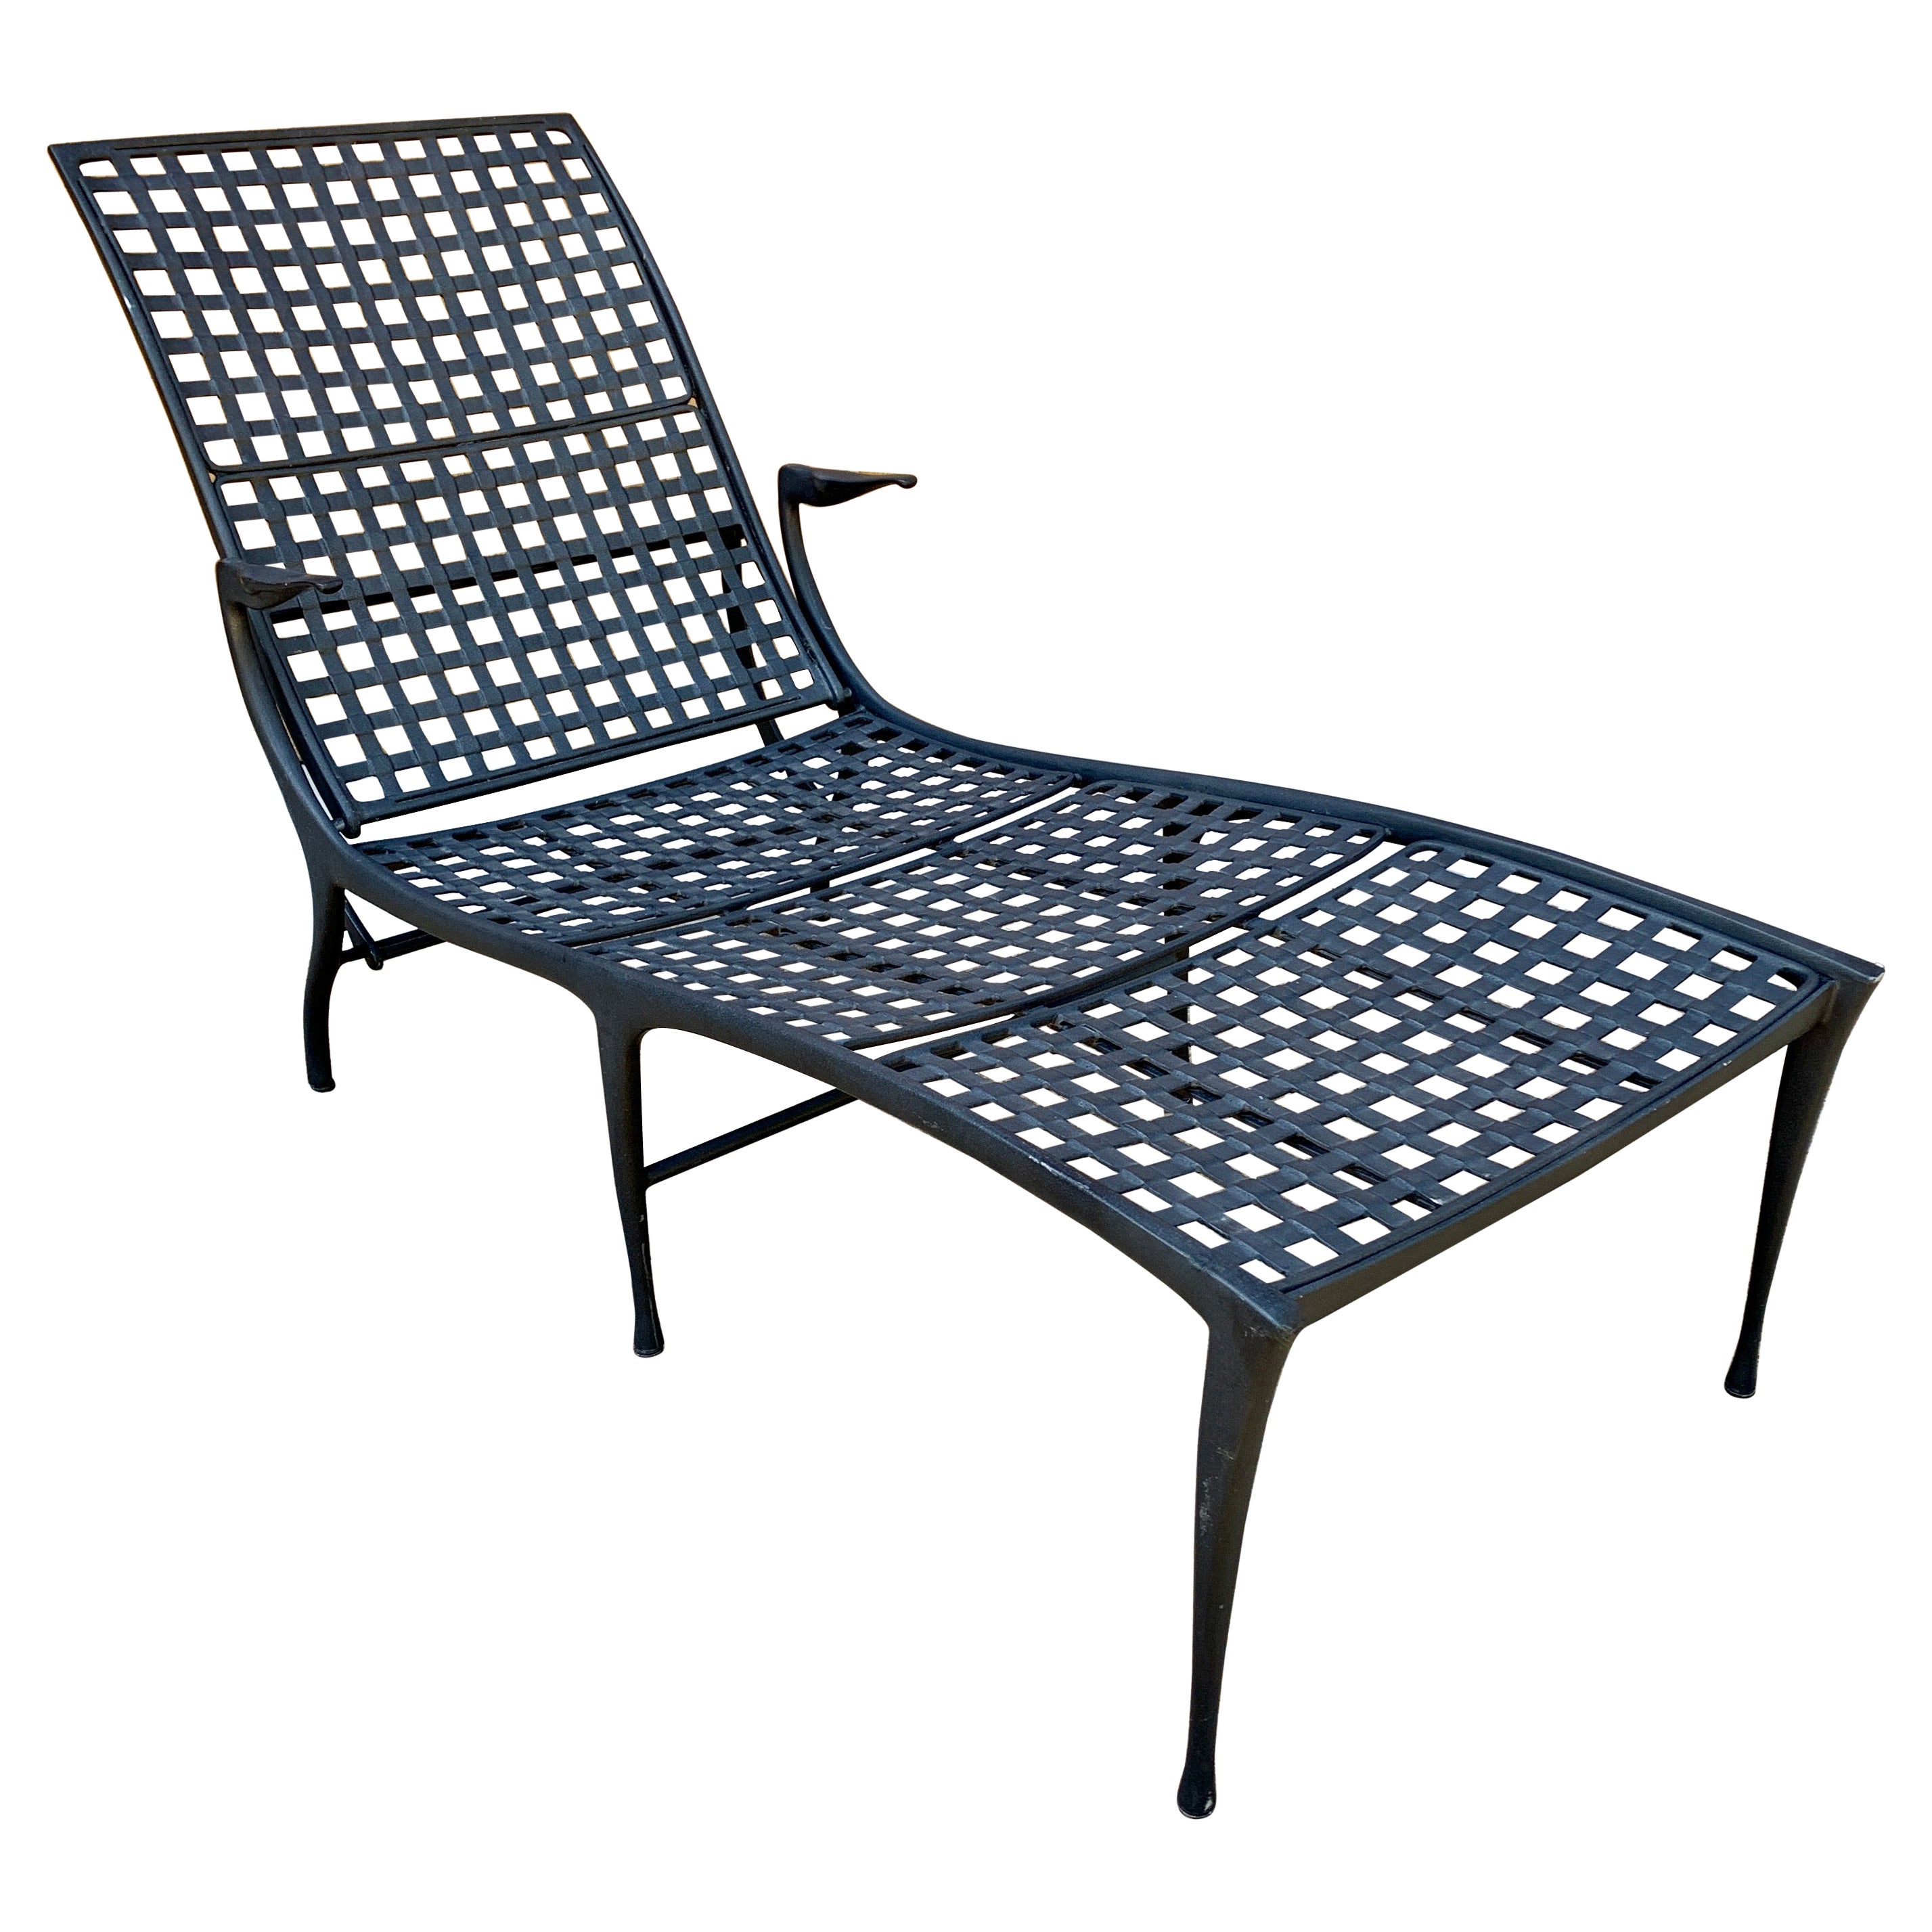 Dan Johnson Aluminum Chair - 2 For Sale on 1stDibs